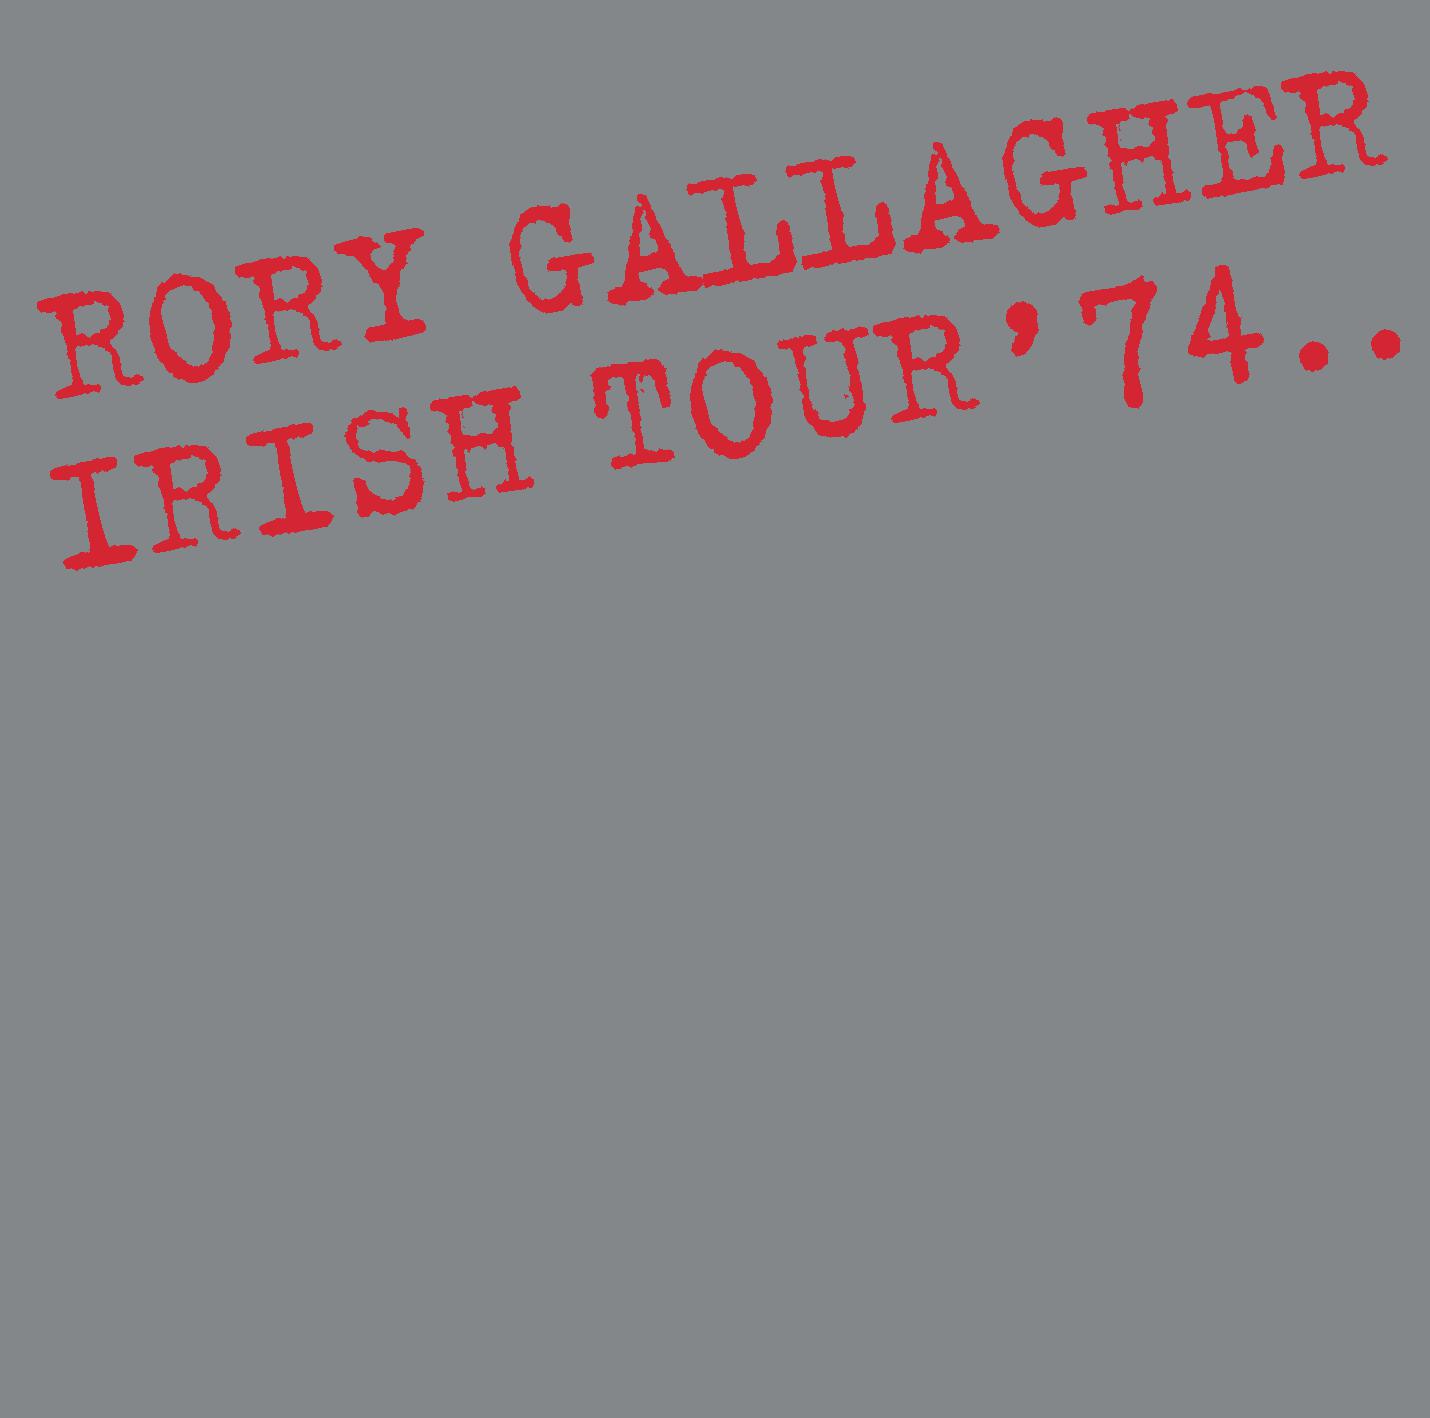 Irish Tour ’74